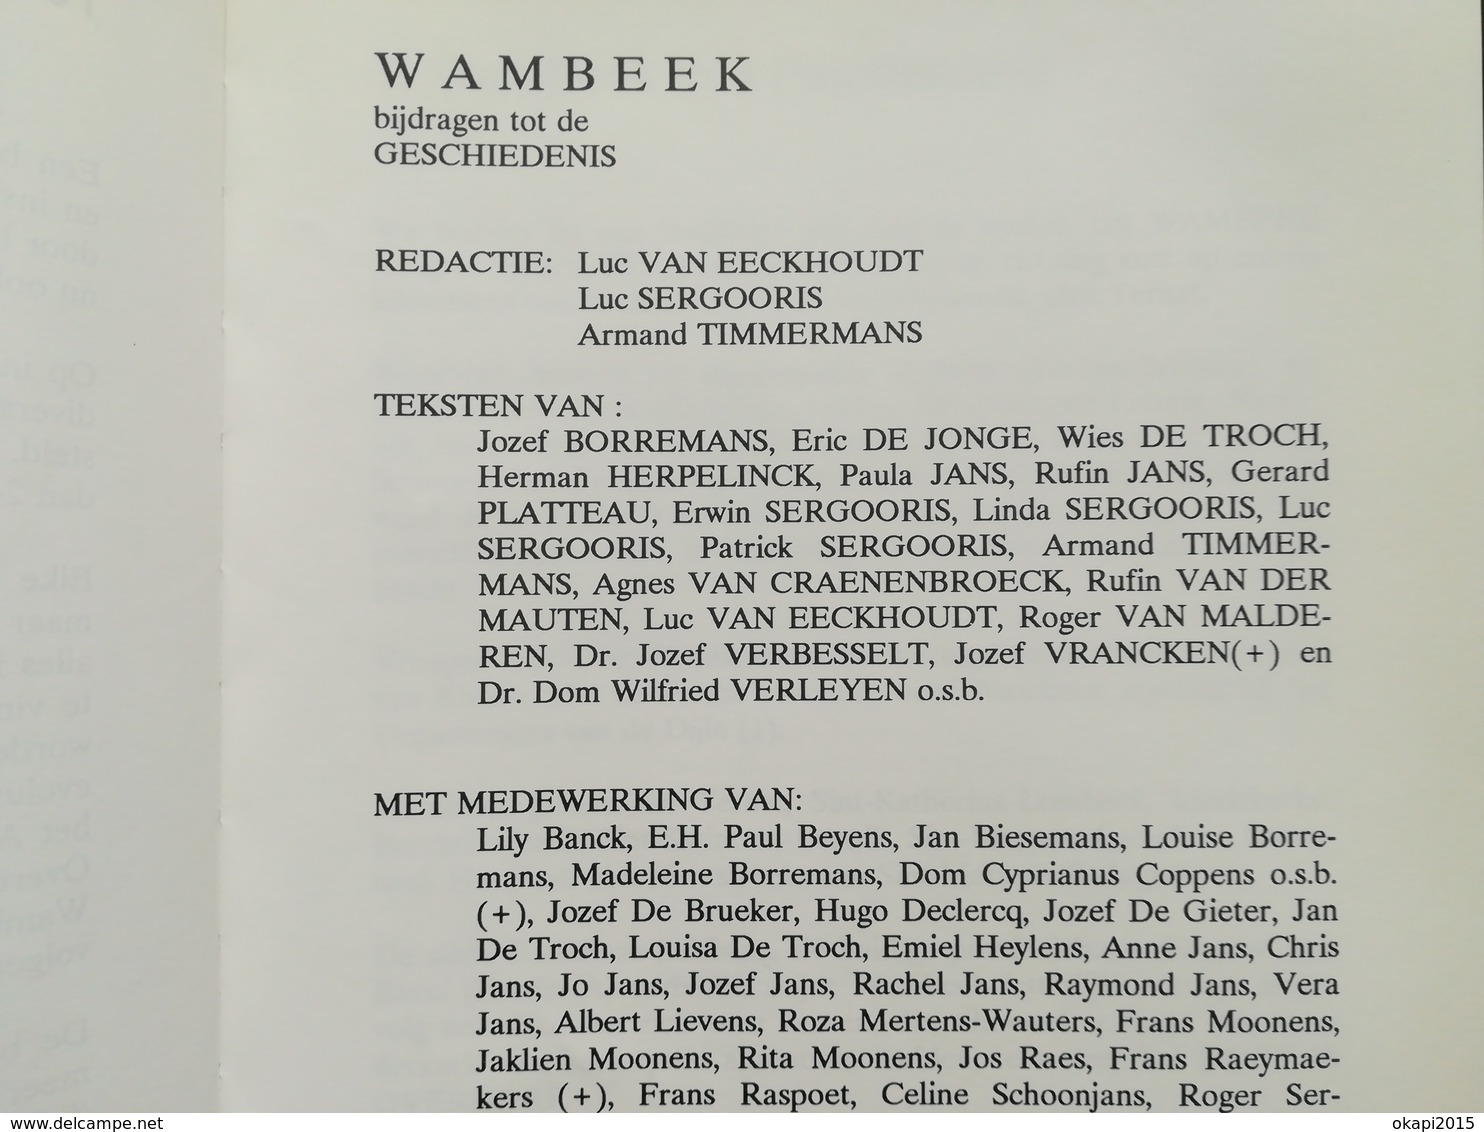 WAMBEEK BIJDRAGEN TOT DE GESCHIEDENIS BOEK LIVRE  JARIG 1993 RÉGIONALISME BELGIË BELGIQUE BRABANT FLAMAND  TERNAT